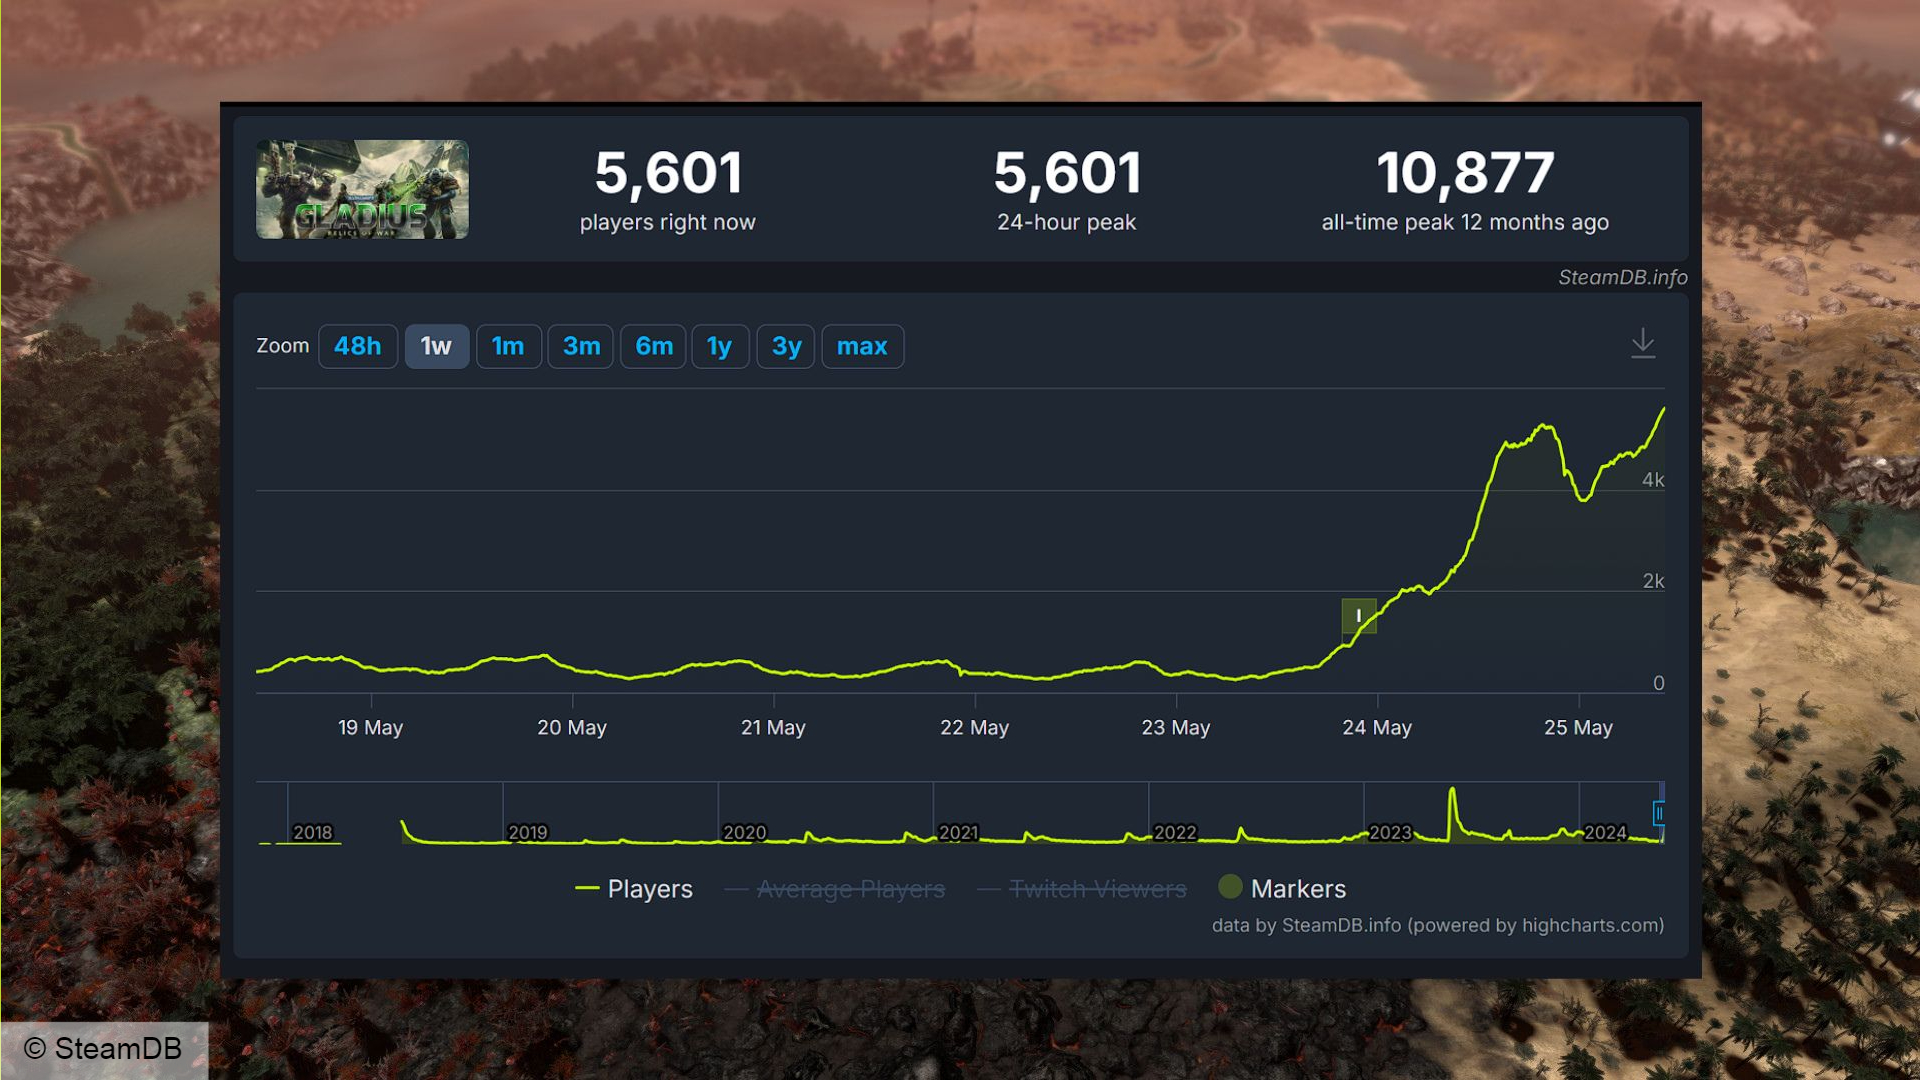 Kostenloses Warhammer 40k Gladius auf Steam: SteamDB-Statistiken jetzt auf Gladius